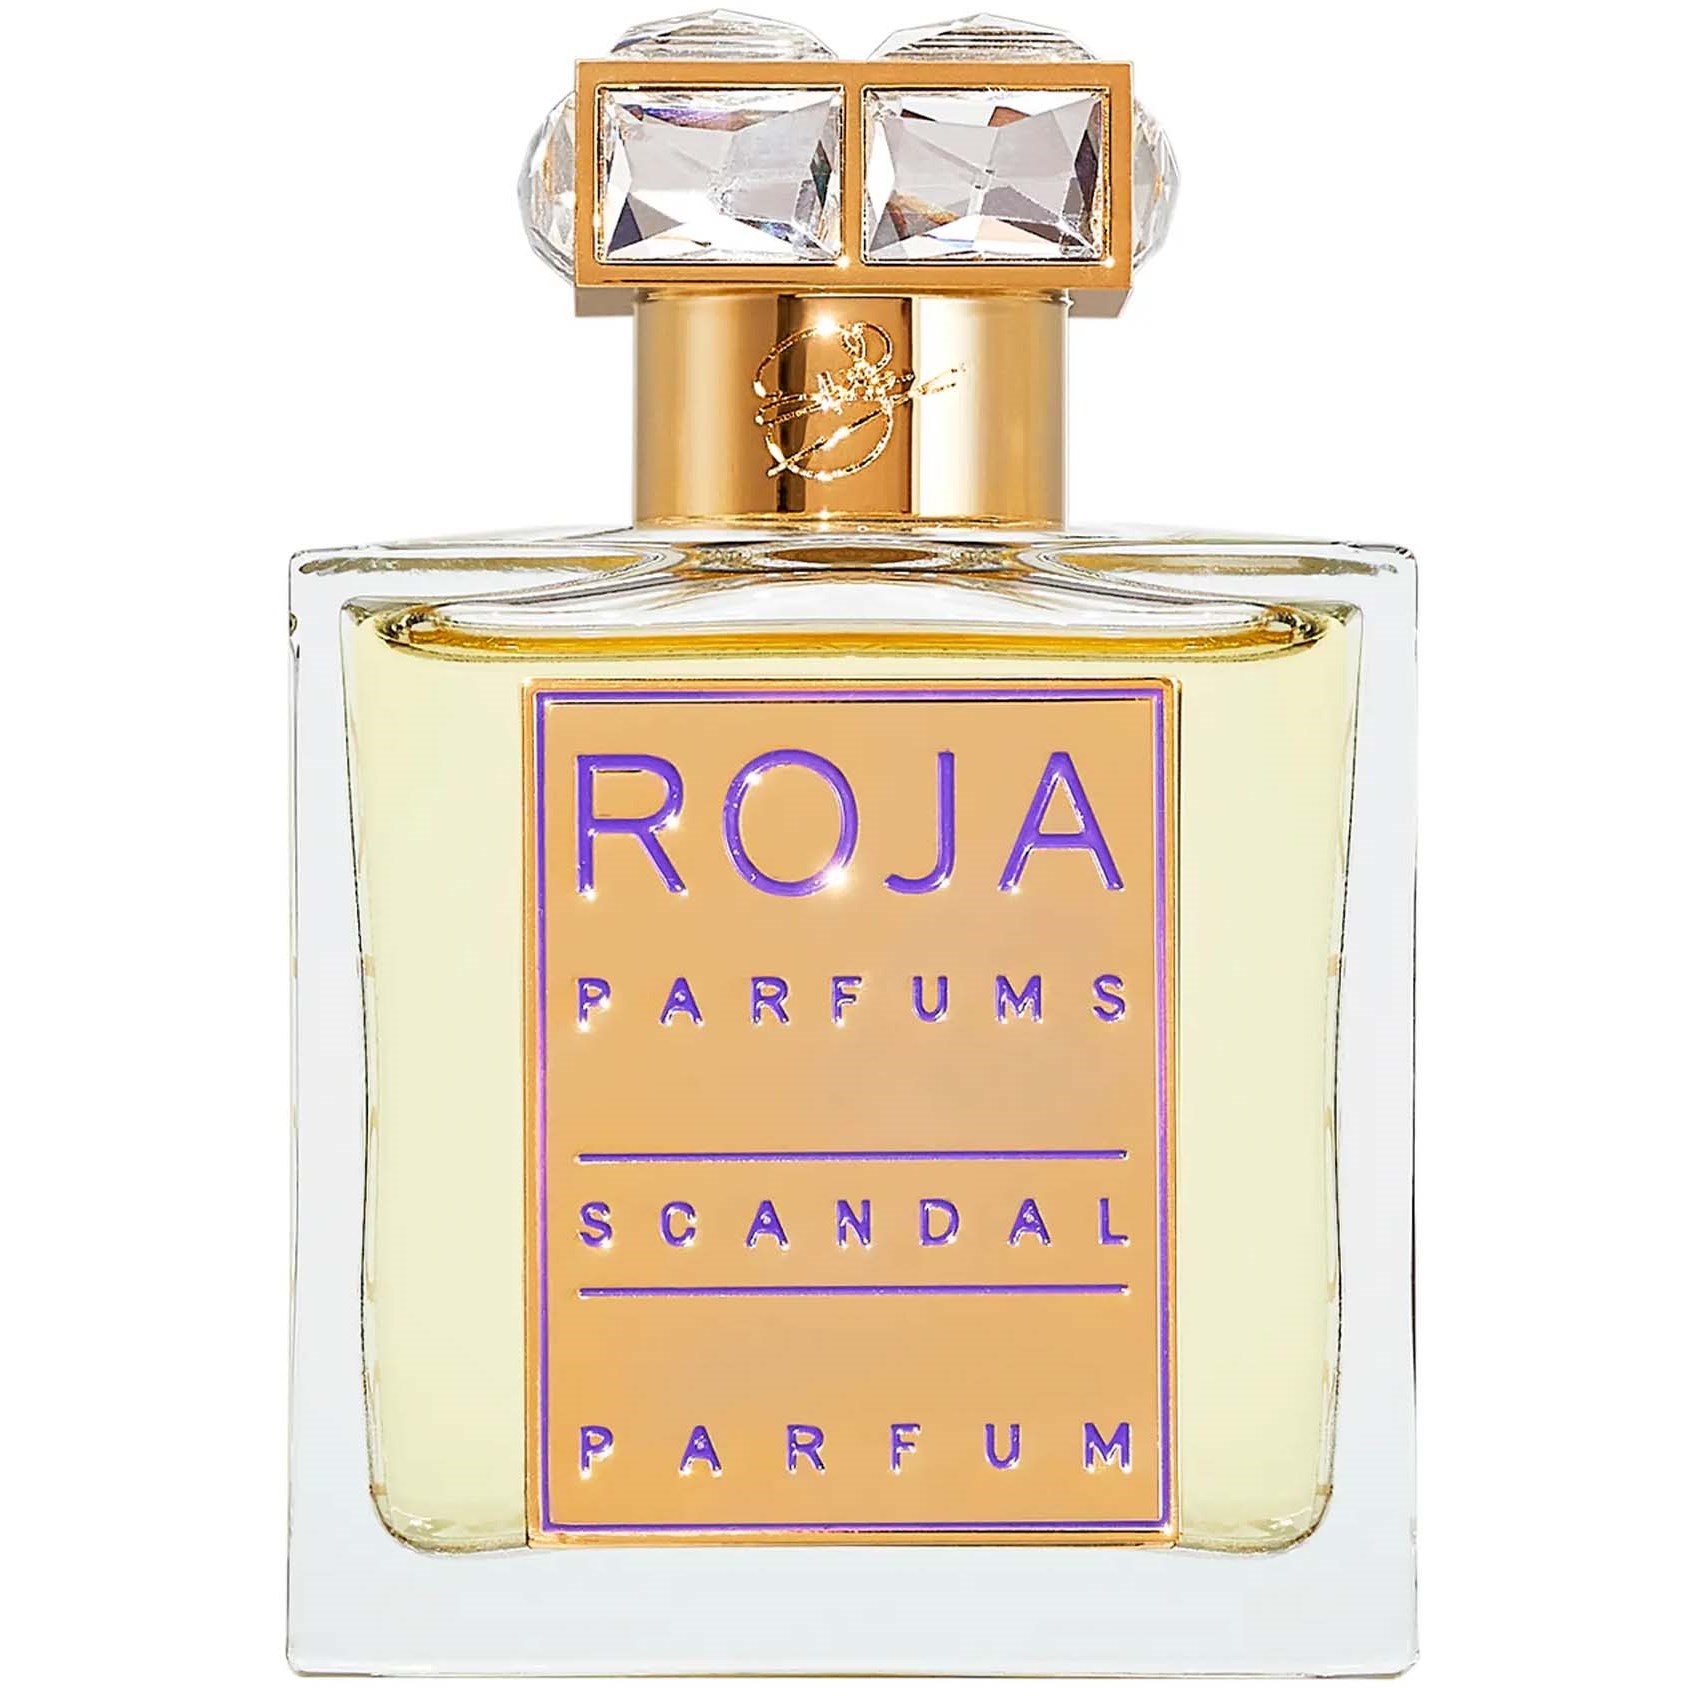 ROJA PARFUMS Scandal Pour Femme Parfum 50 ml